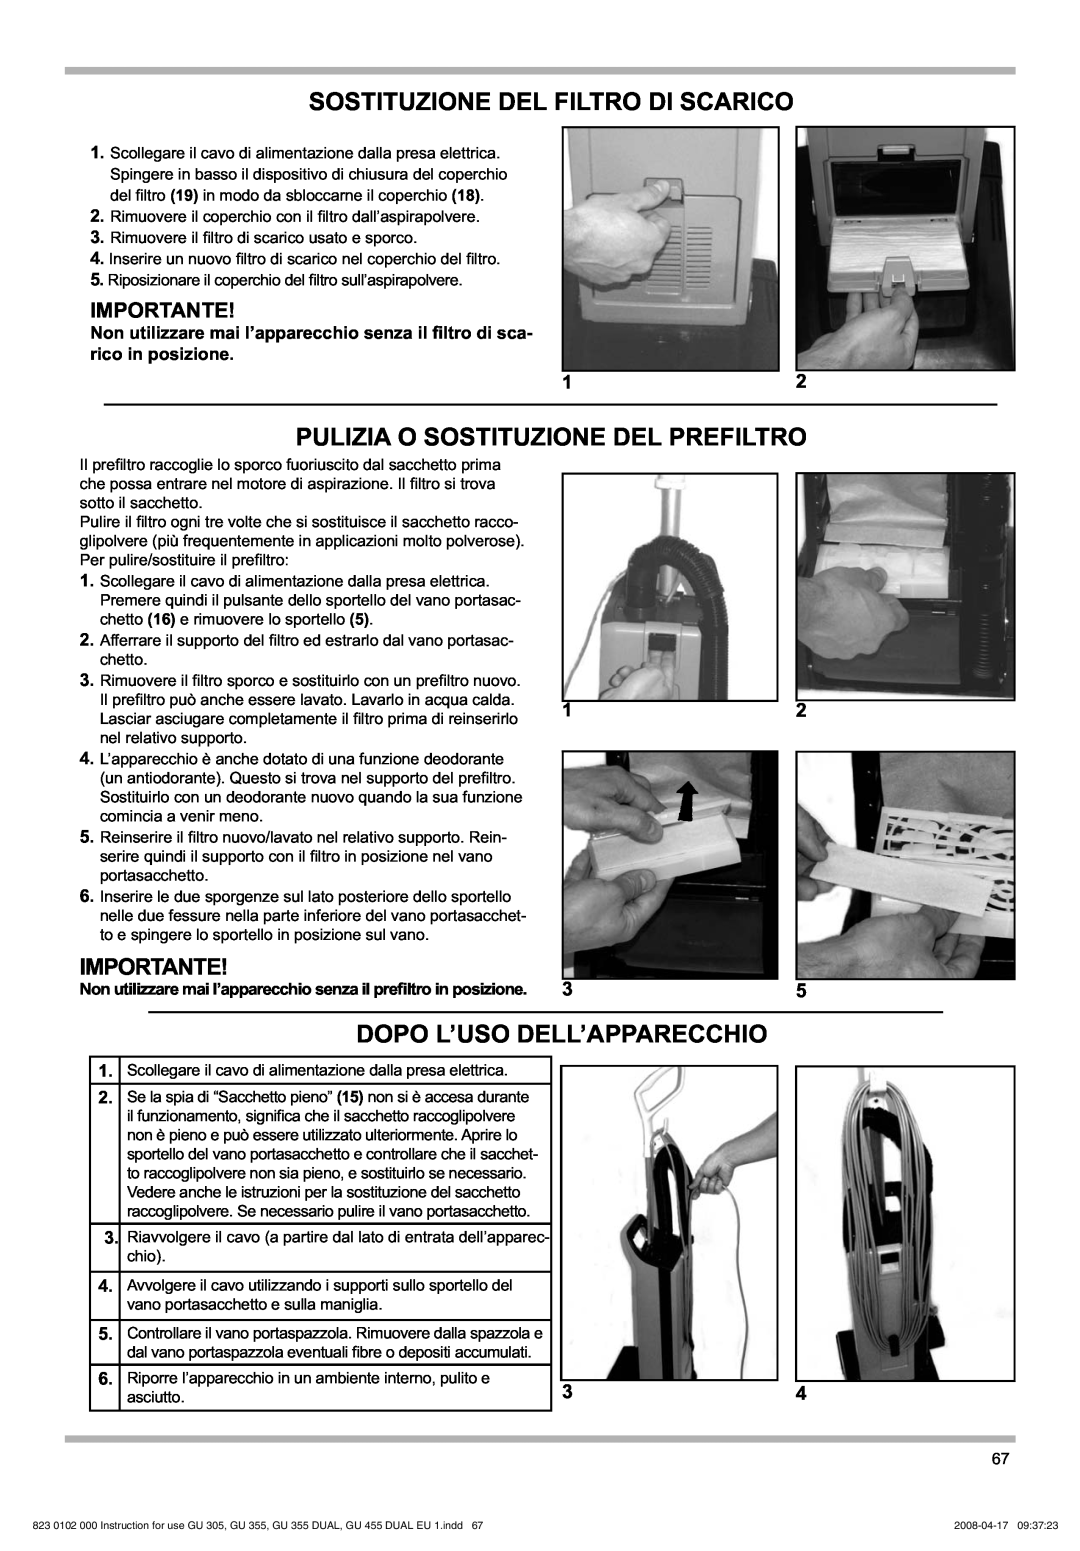 Nilfisk-Advance America GU 355 manual Sostituzione Del Filtro Di Scarico, Pulizia O Sostituzione Del Prefiltro, Importante 